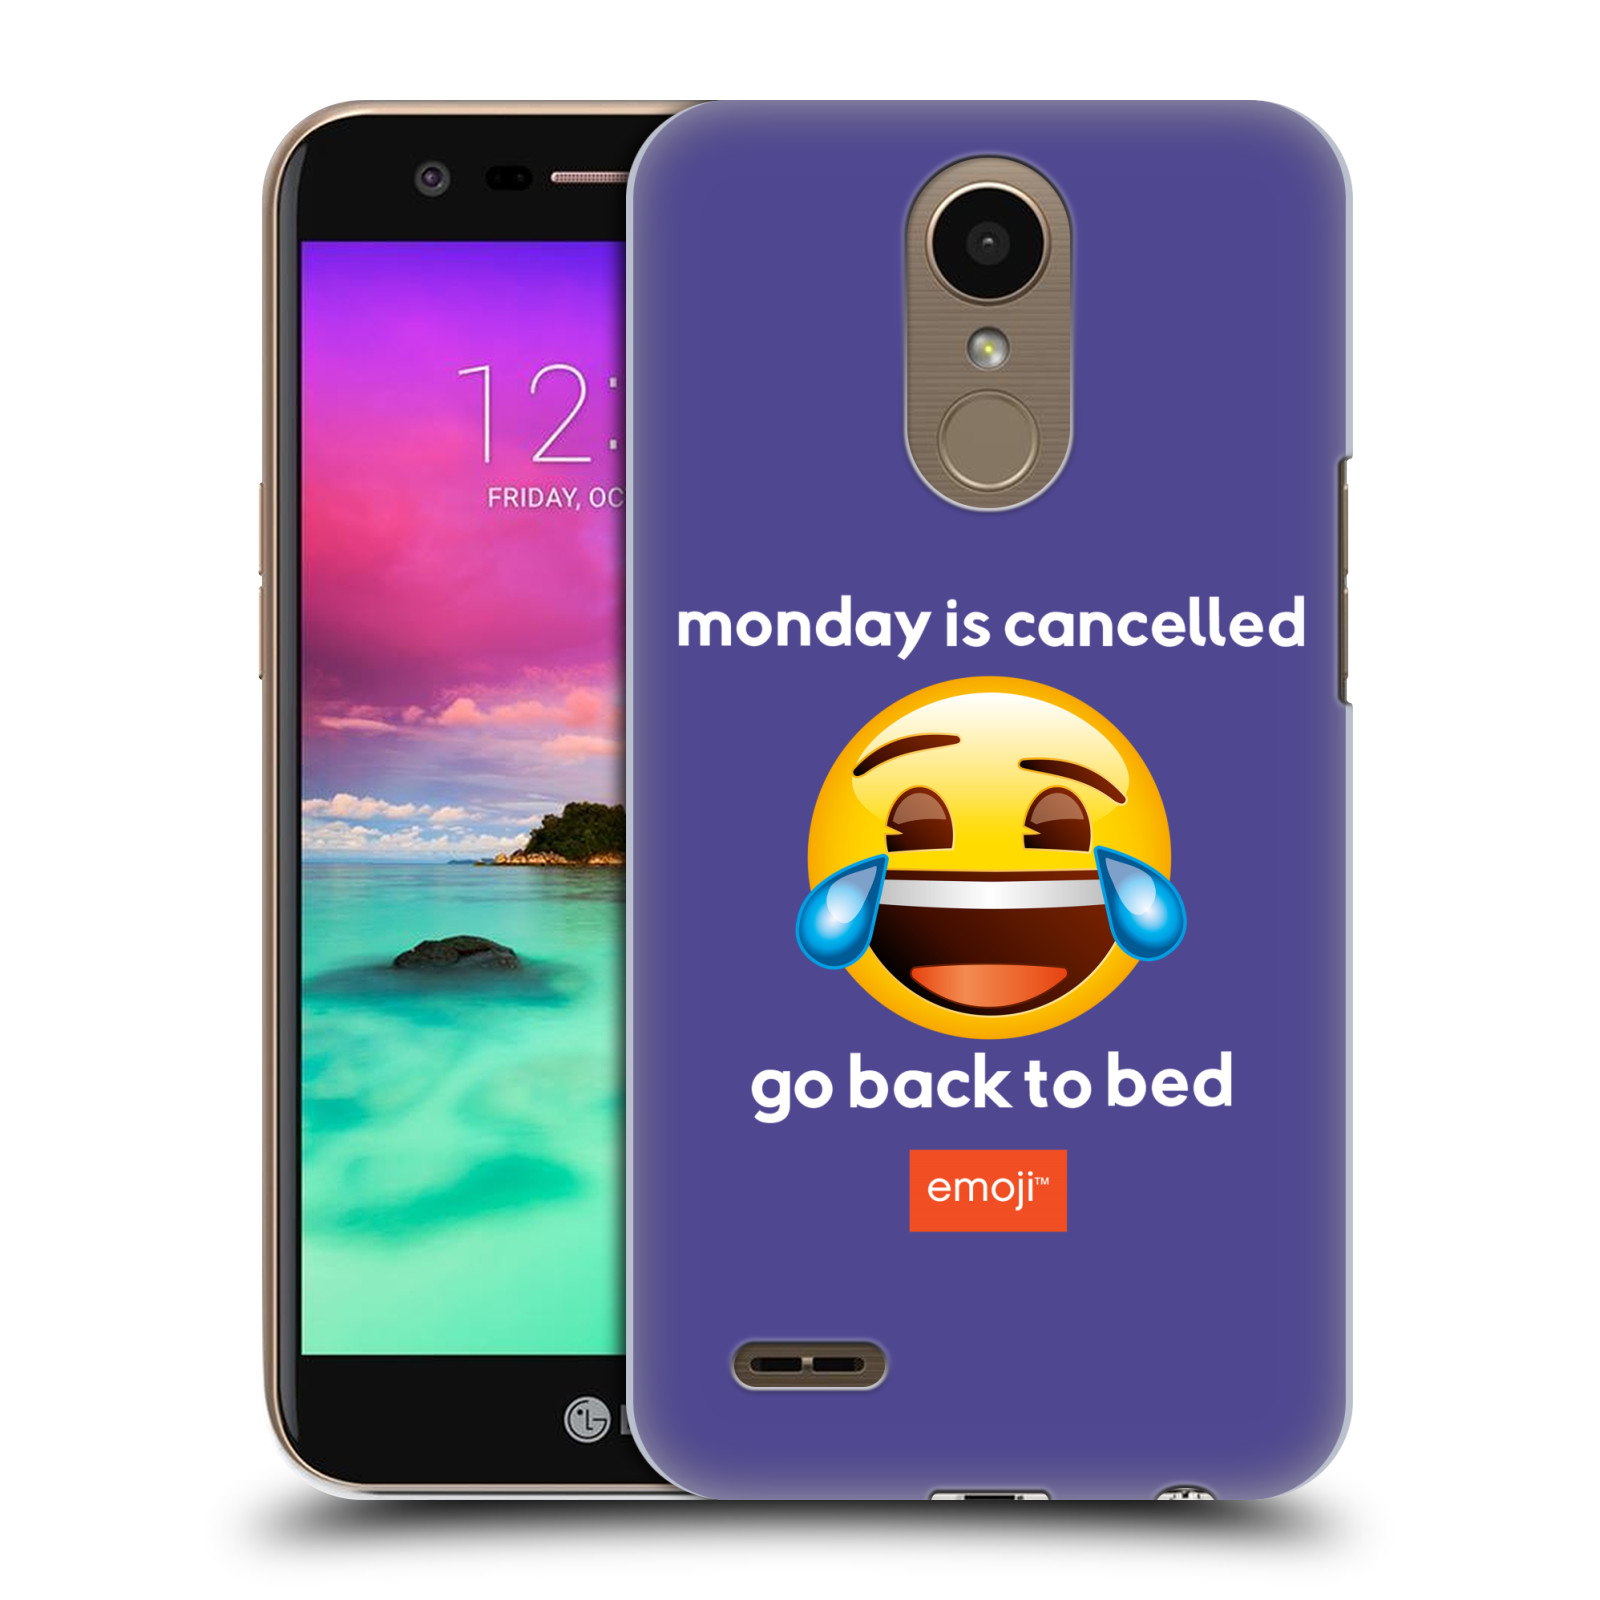 Pouzdro na mobil LG K10 2017 / K10 2017 DUAL SIM - HEAD CASE - Emoji smějící se smajlík pondělí